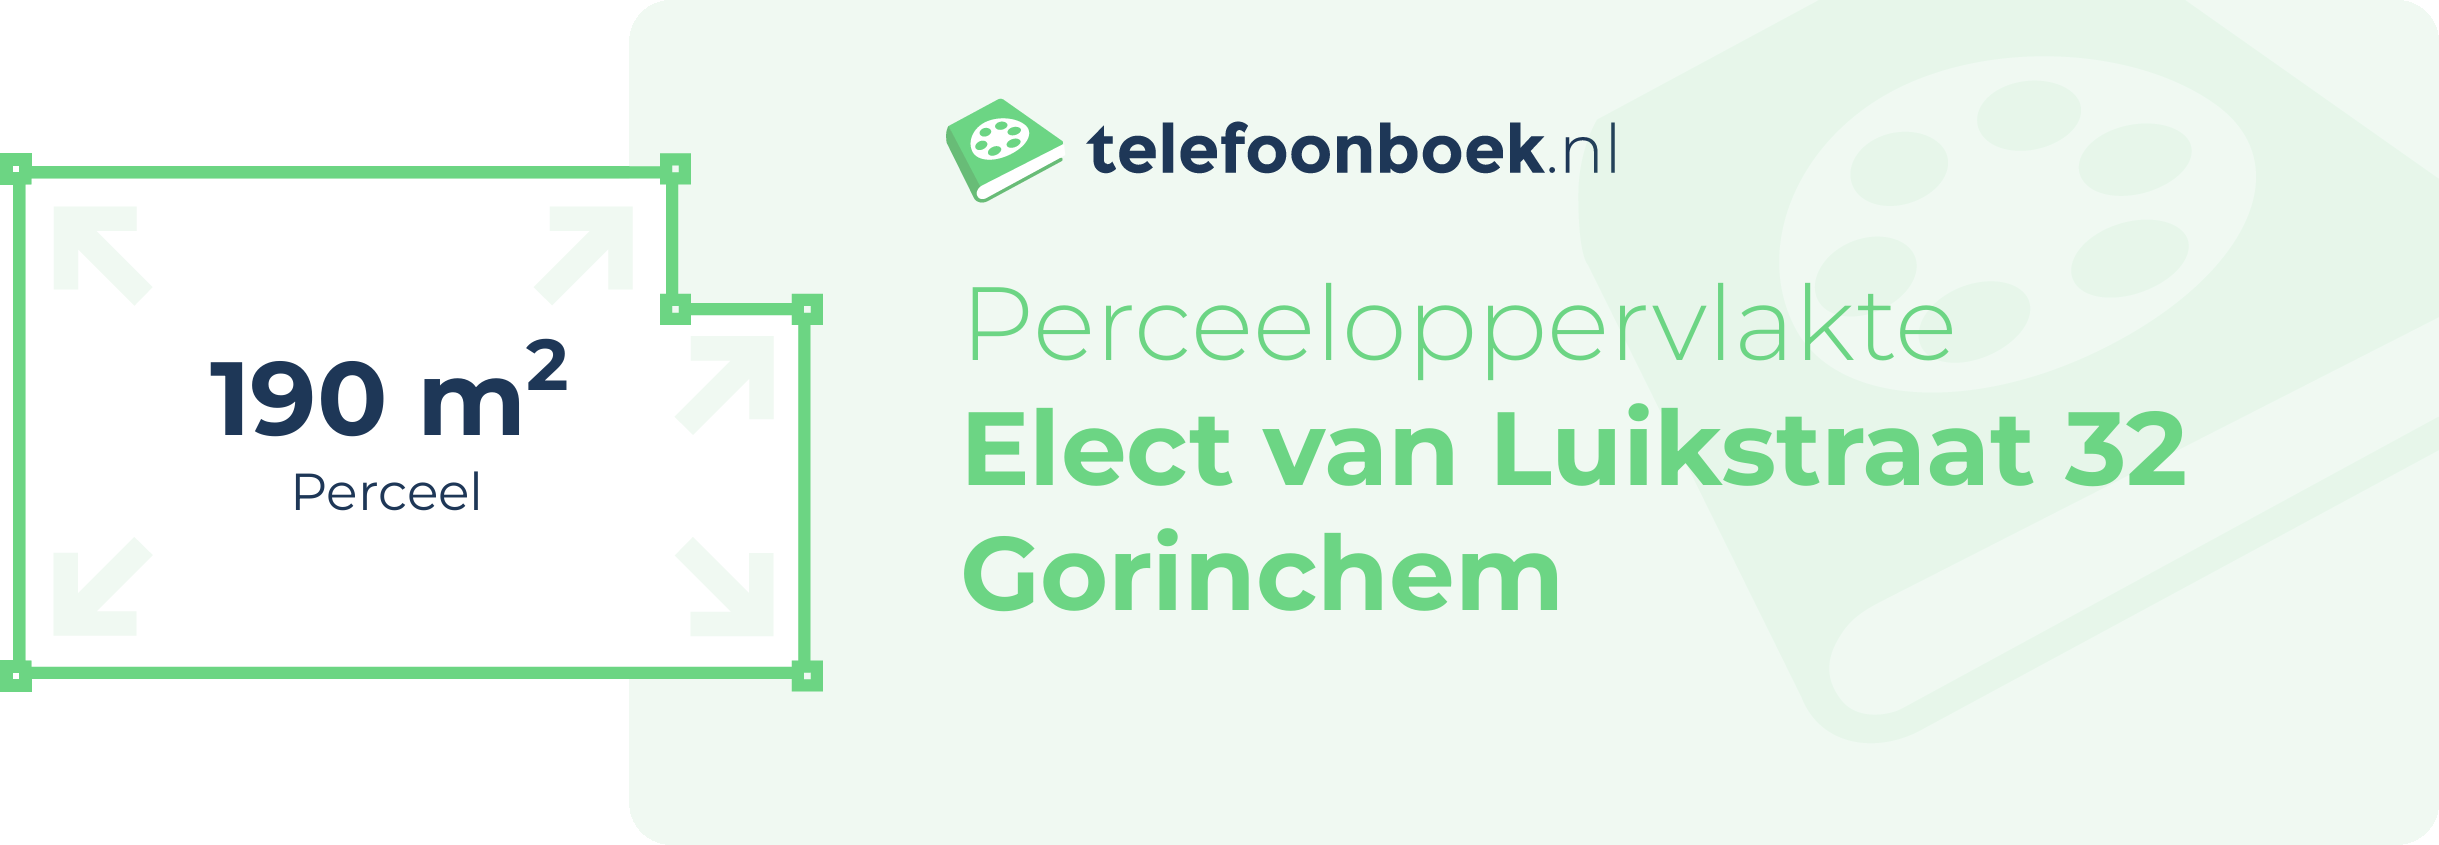 Perceeloppervlakte Elect Van Luikstraat 32 Gorinchem